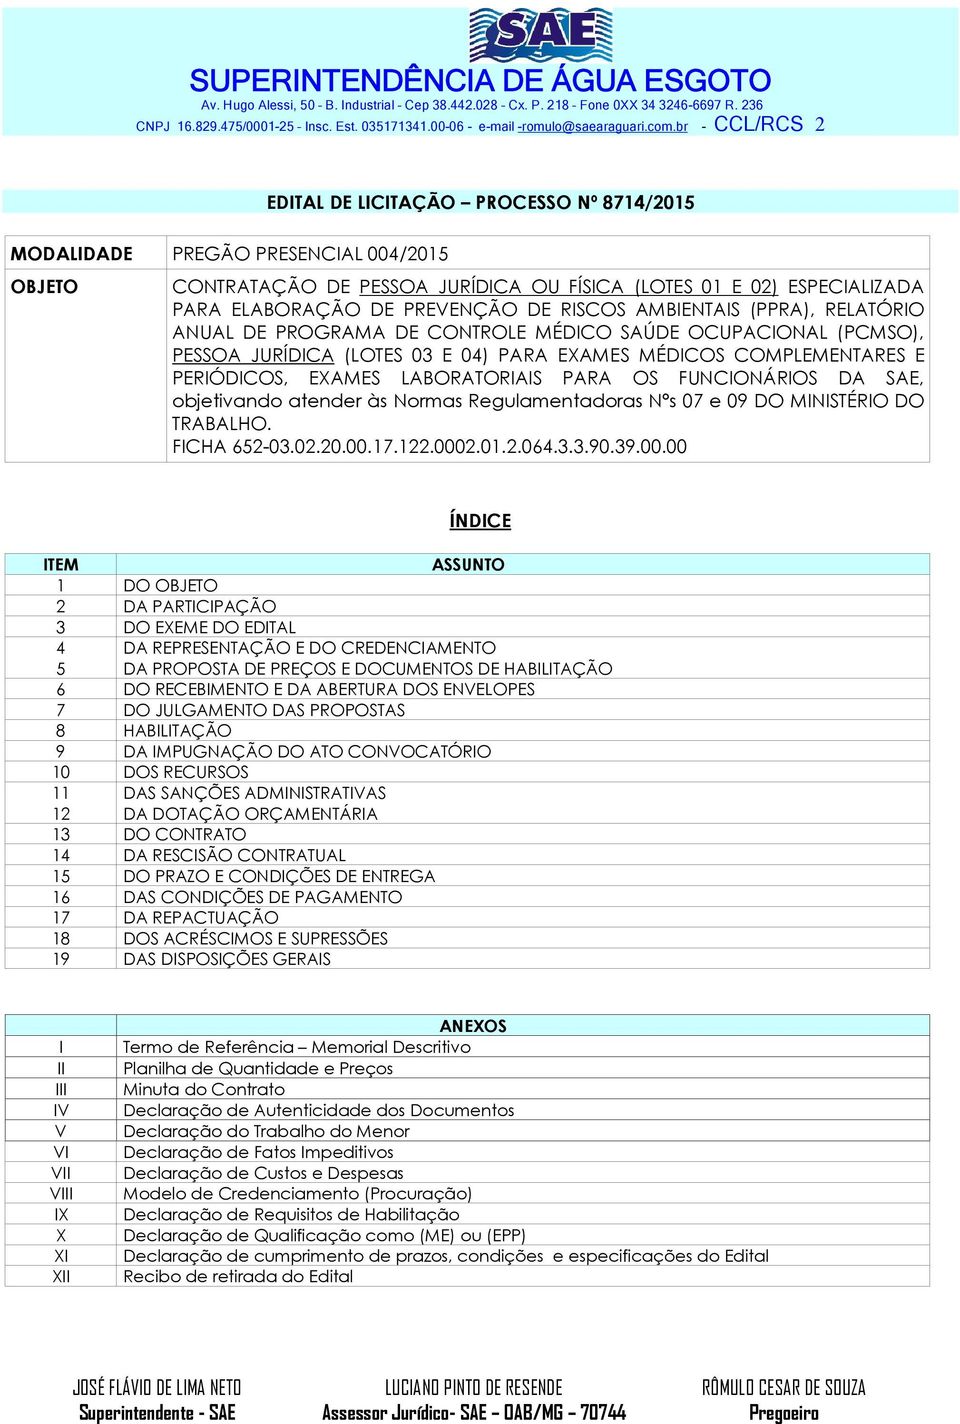 PREVENÇÃO DE RISCOS AMBIENTAIS (PPRA), RELATÓRIO ANUAL DE PROGRAMA DE CONTROLE MÉDICO SAÚDE OCUPACIONAL (PCMSO), PESSOA JURÍDICA (LOTES 03 E 04) PARA EXAMES MÉDICOS COMPLEMENTARES E PERIÓDICOS,